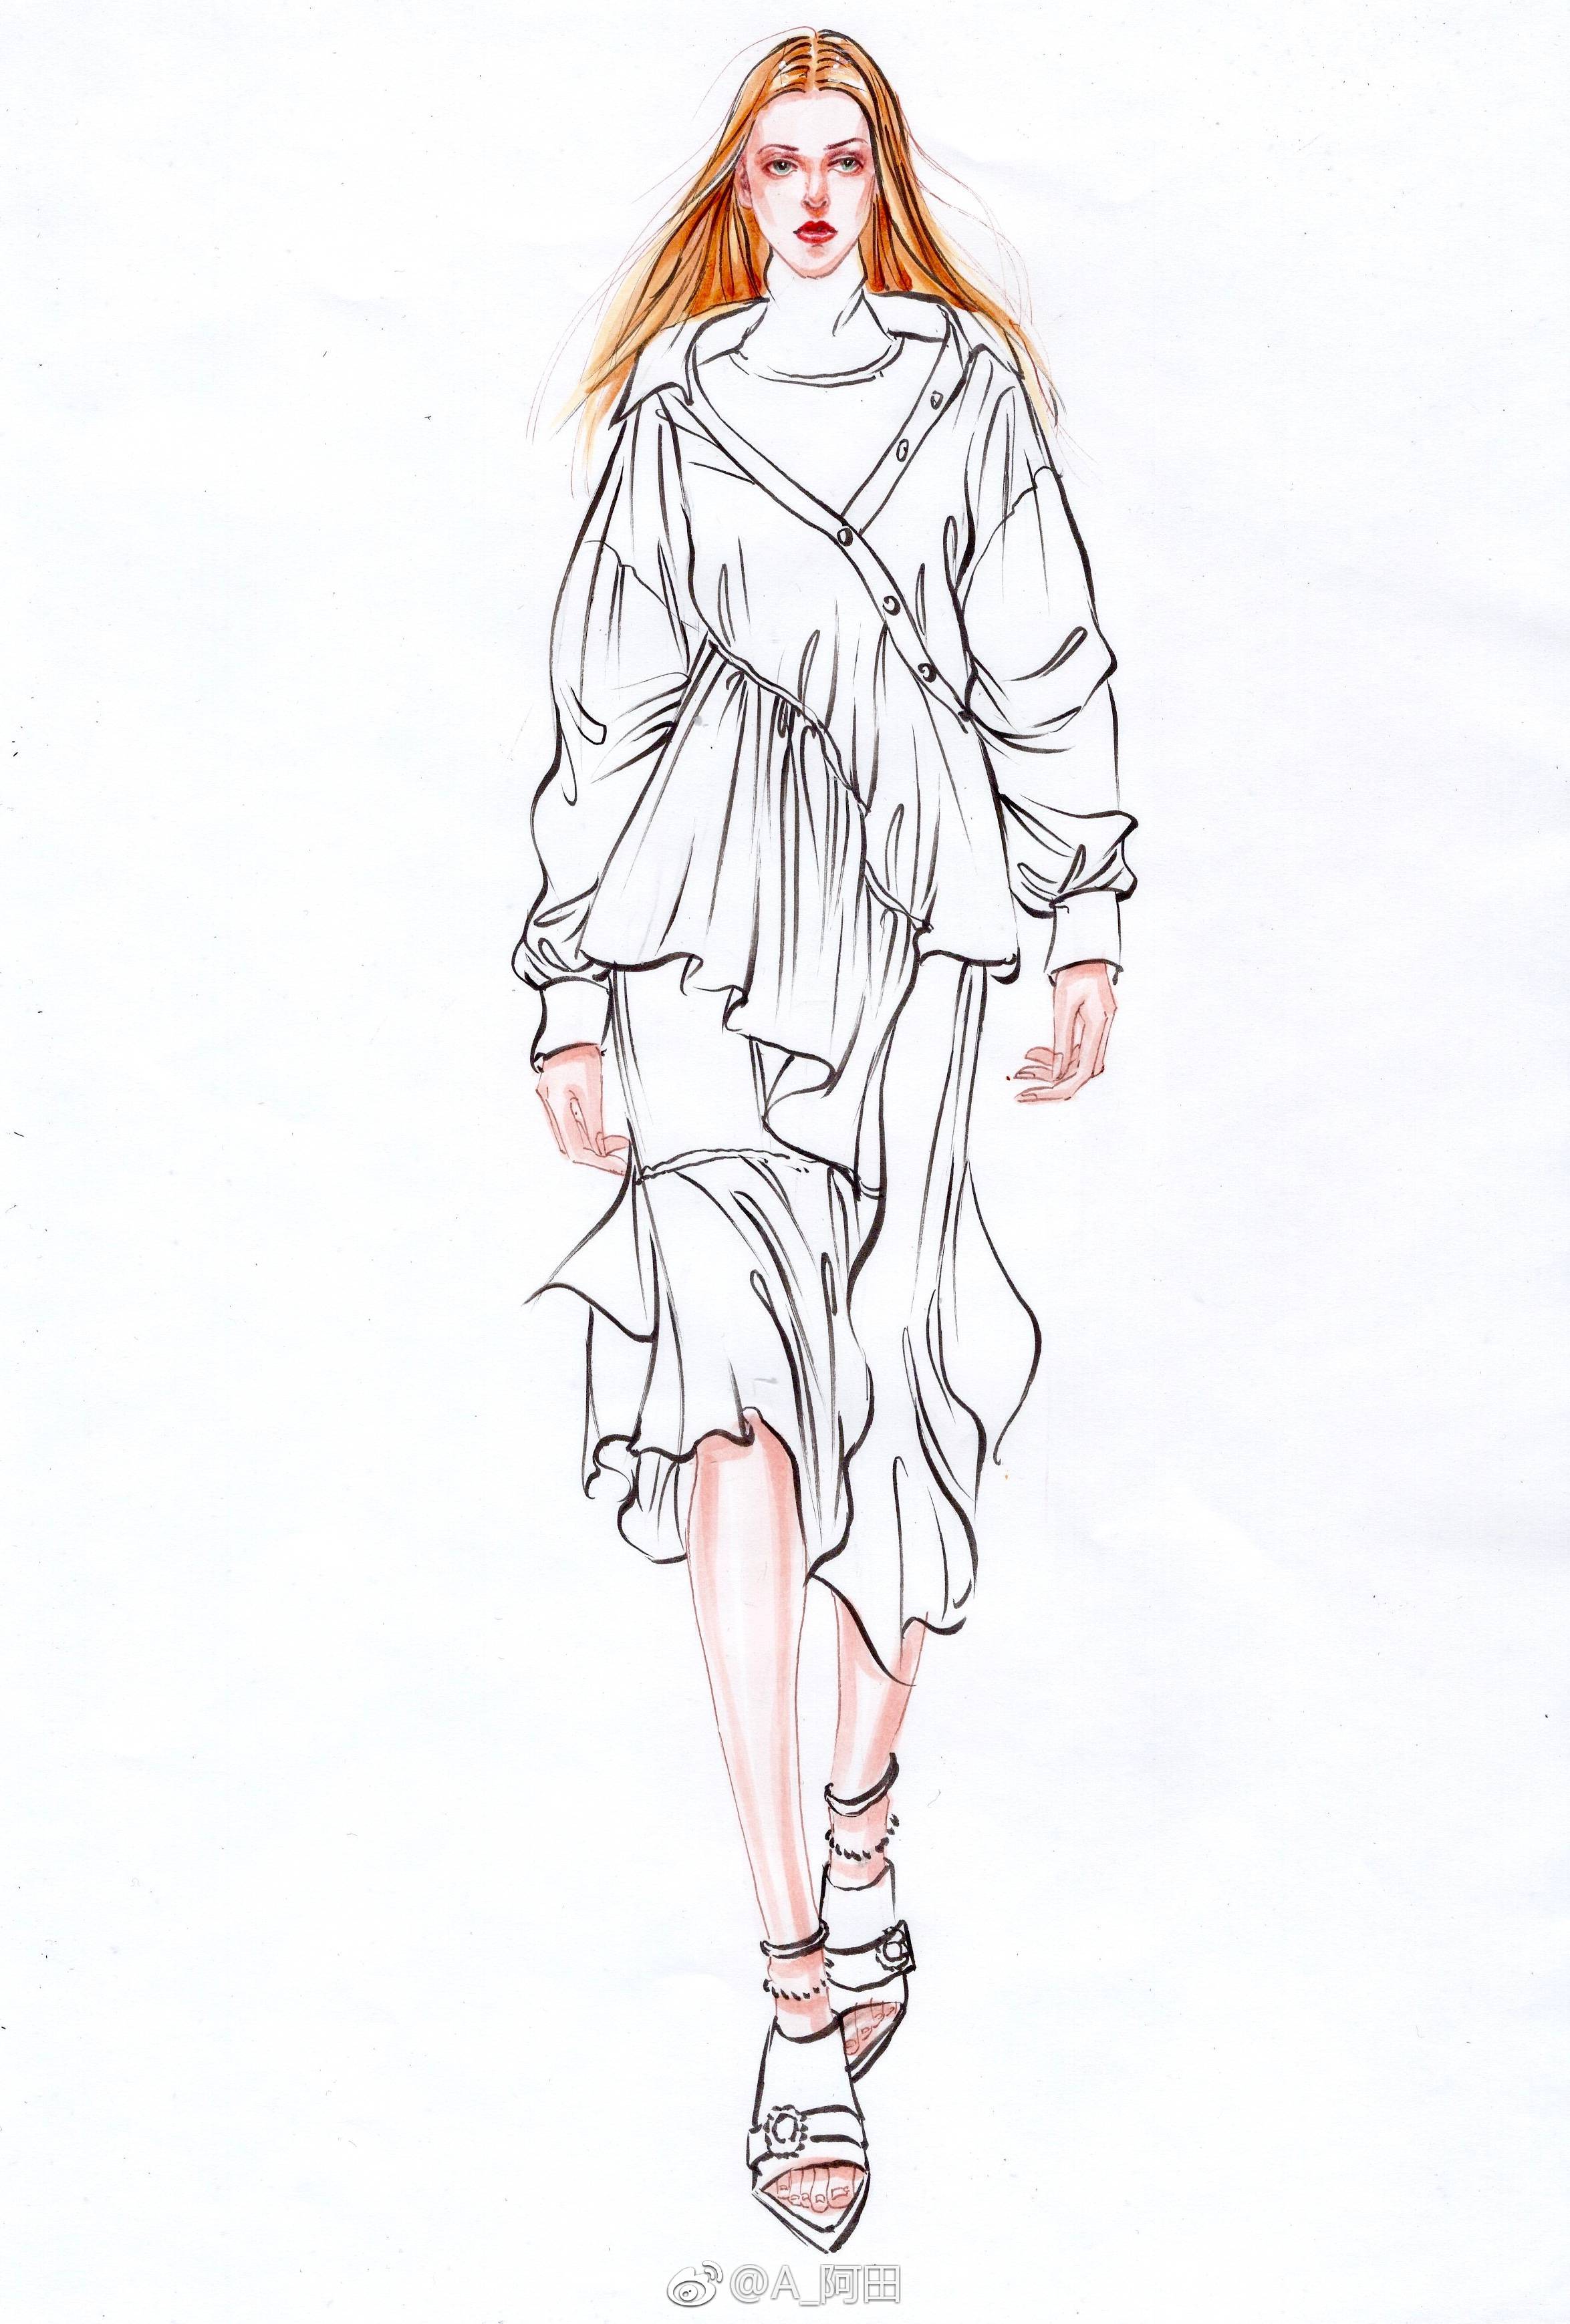 服装设计线稿以及人体绘法作者:a_阿田 (转)via @服装设计手绘手稿